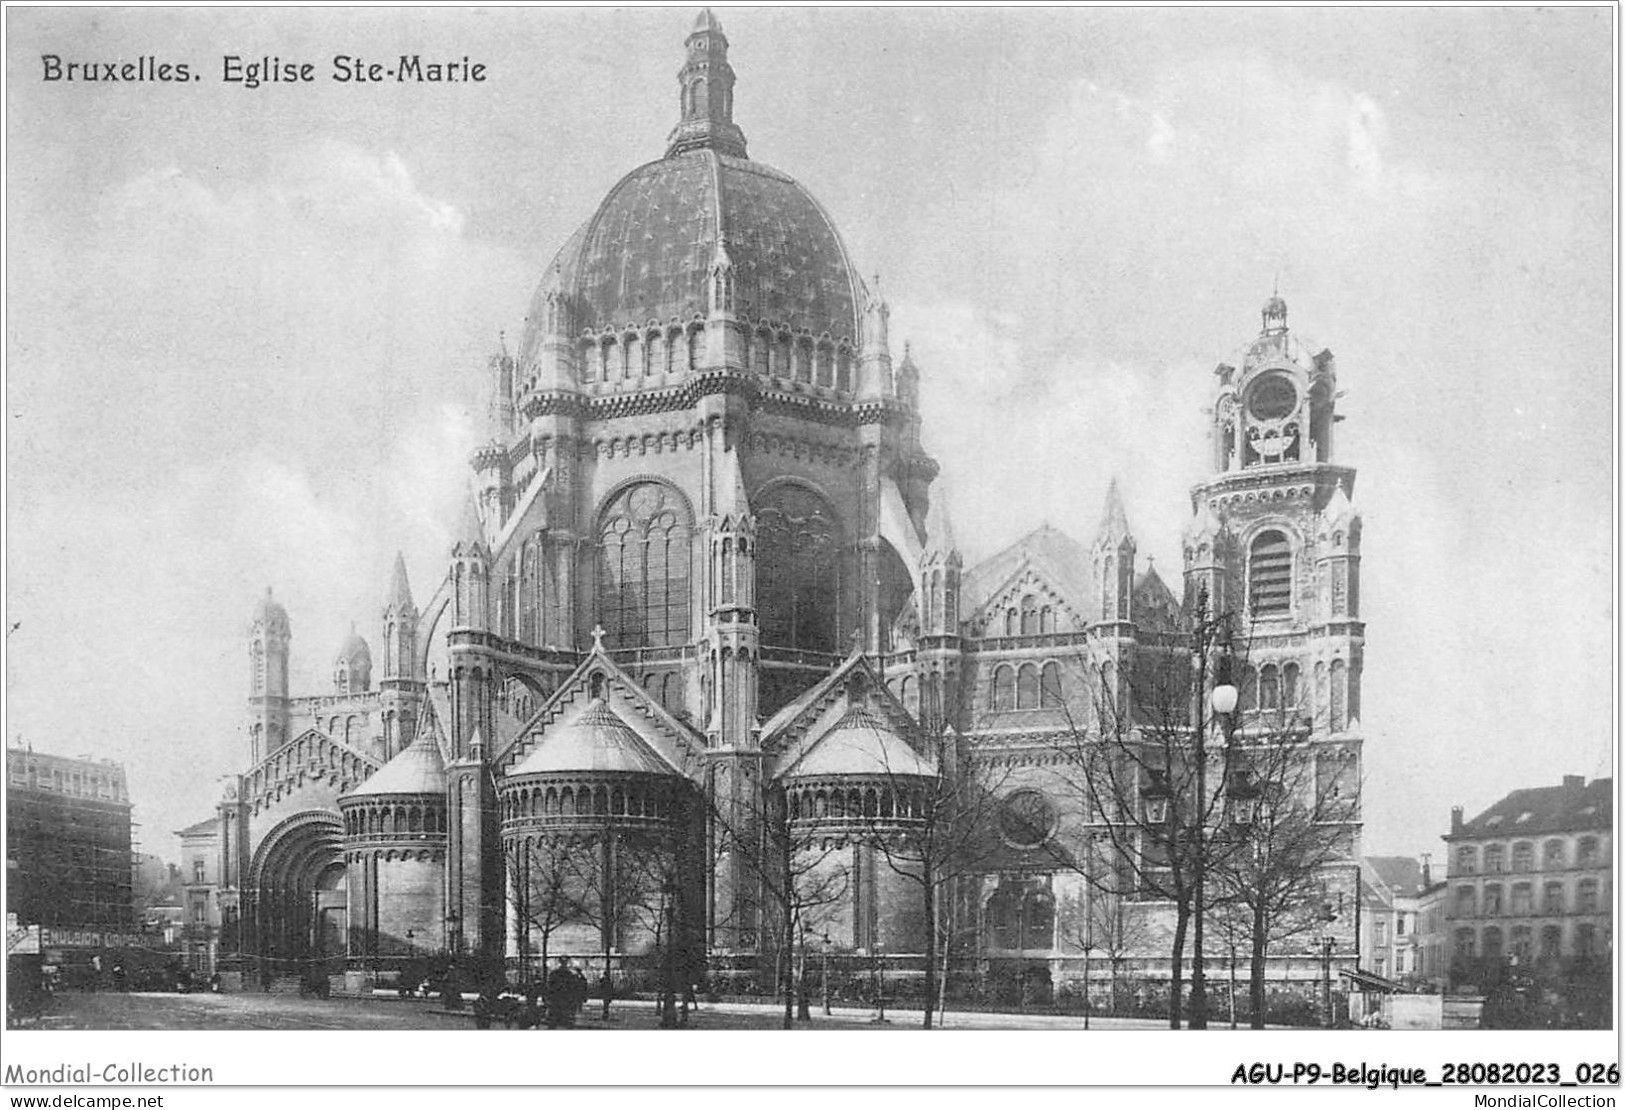 AGUP9-0730-BELGIQUE - BRUXELLES - église Ste-marie - Monuments, édifices